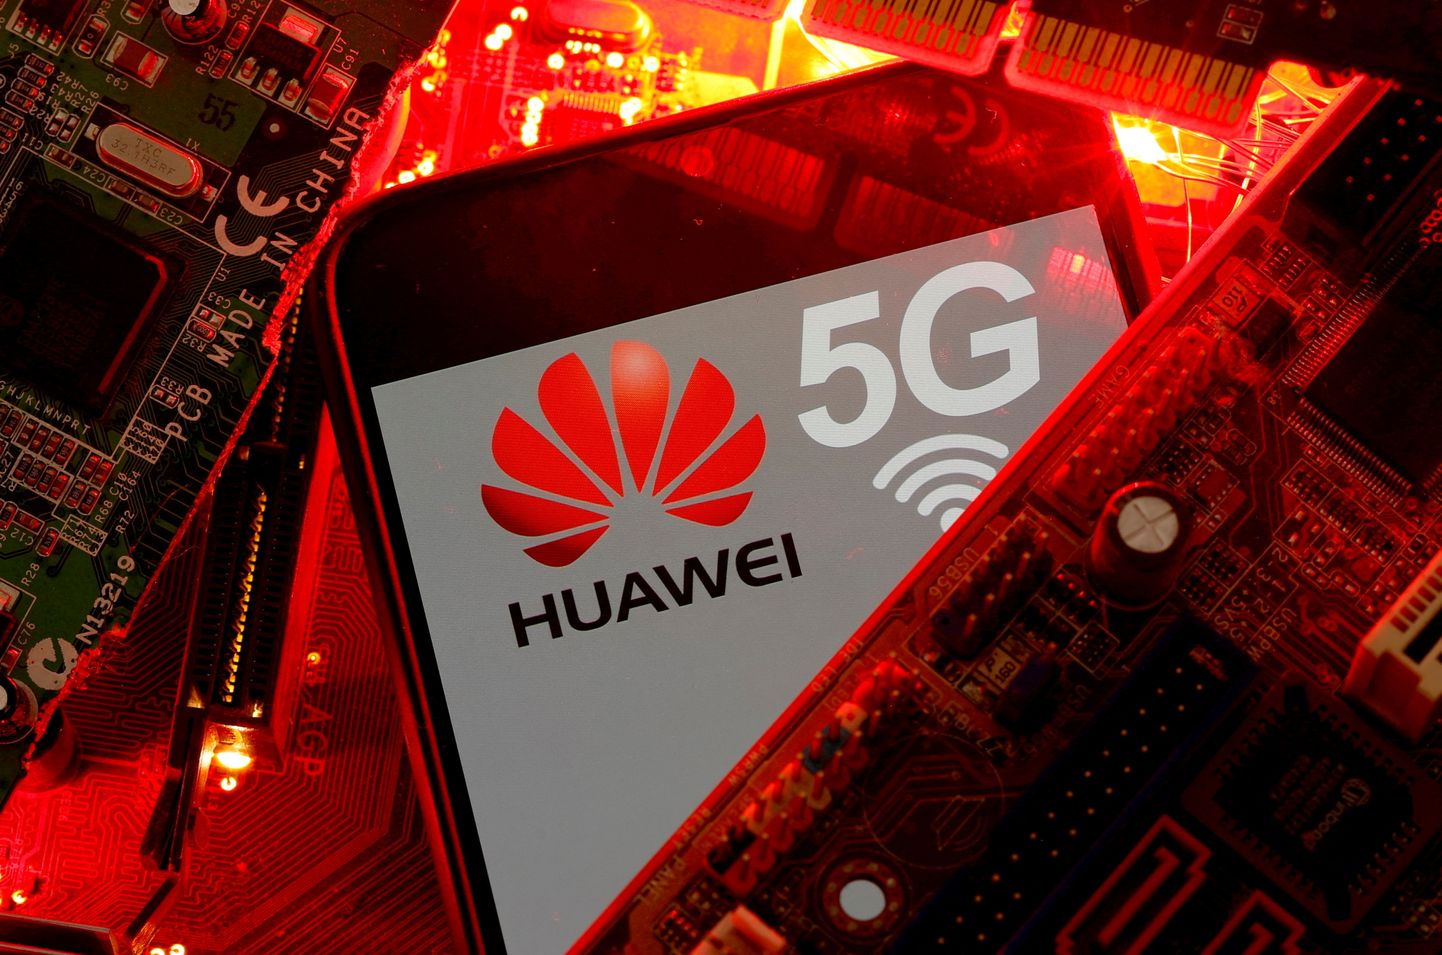 Huaweile on sanktsioonidega piiratud teatud kiipide ja kiibitehnoloogia müük, aga kuidagi on Hiina suurtootja suutnud mõnesid kõrgtehnoloogilisi komponente toota.